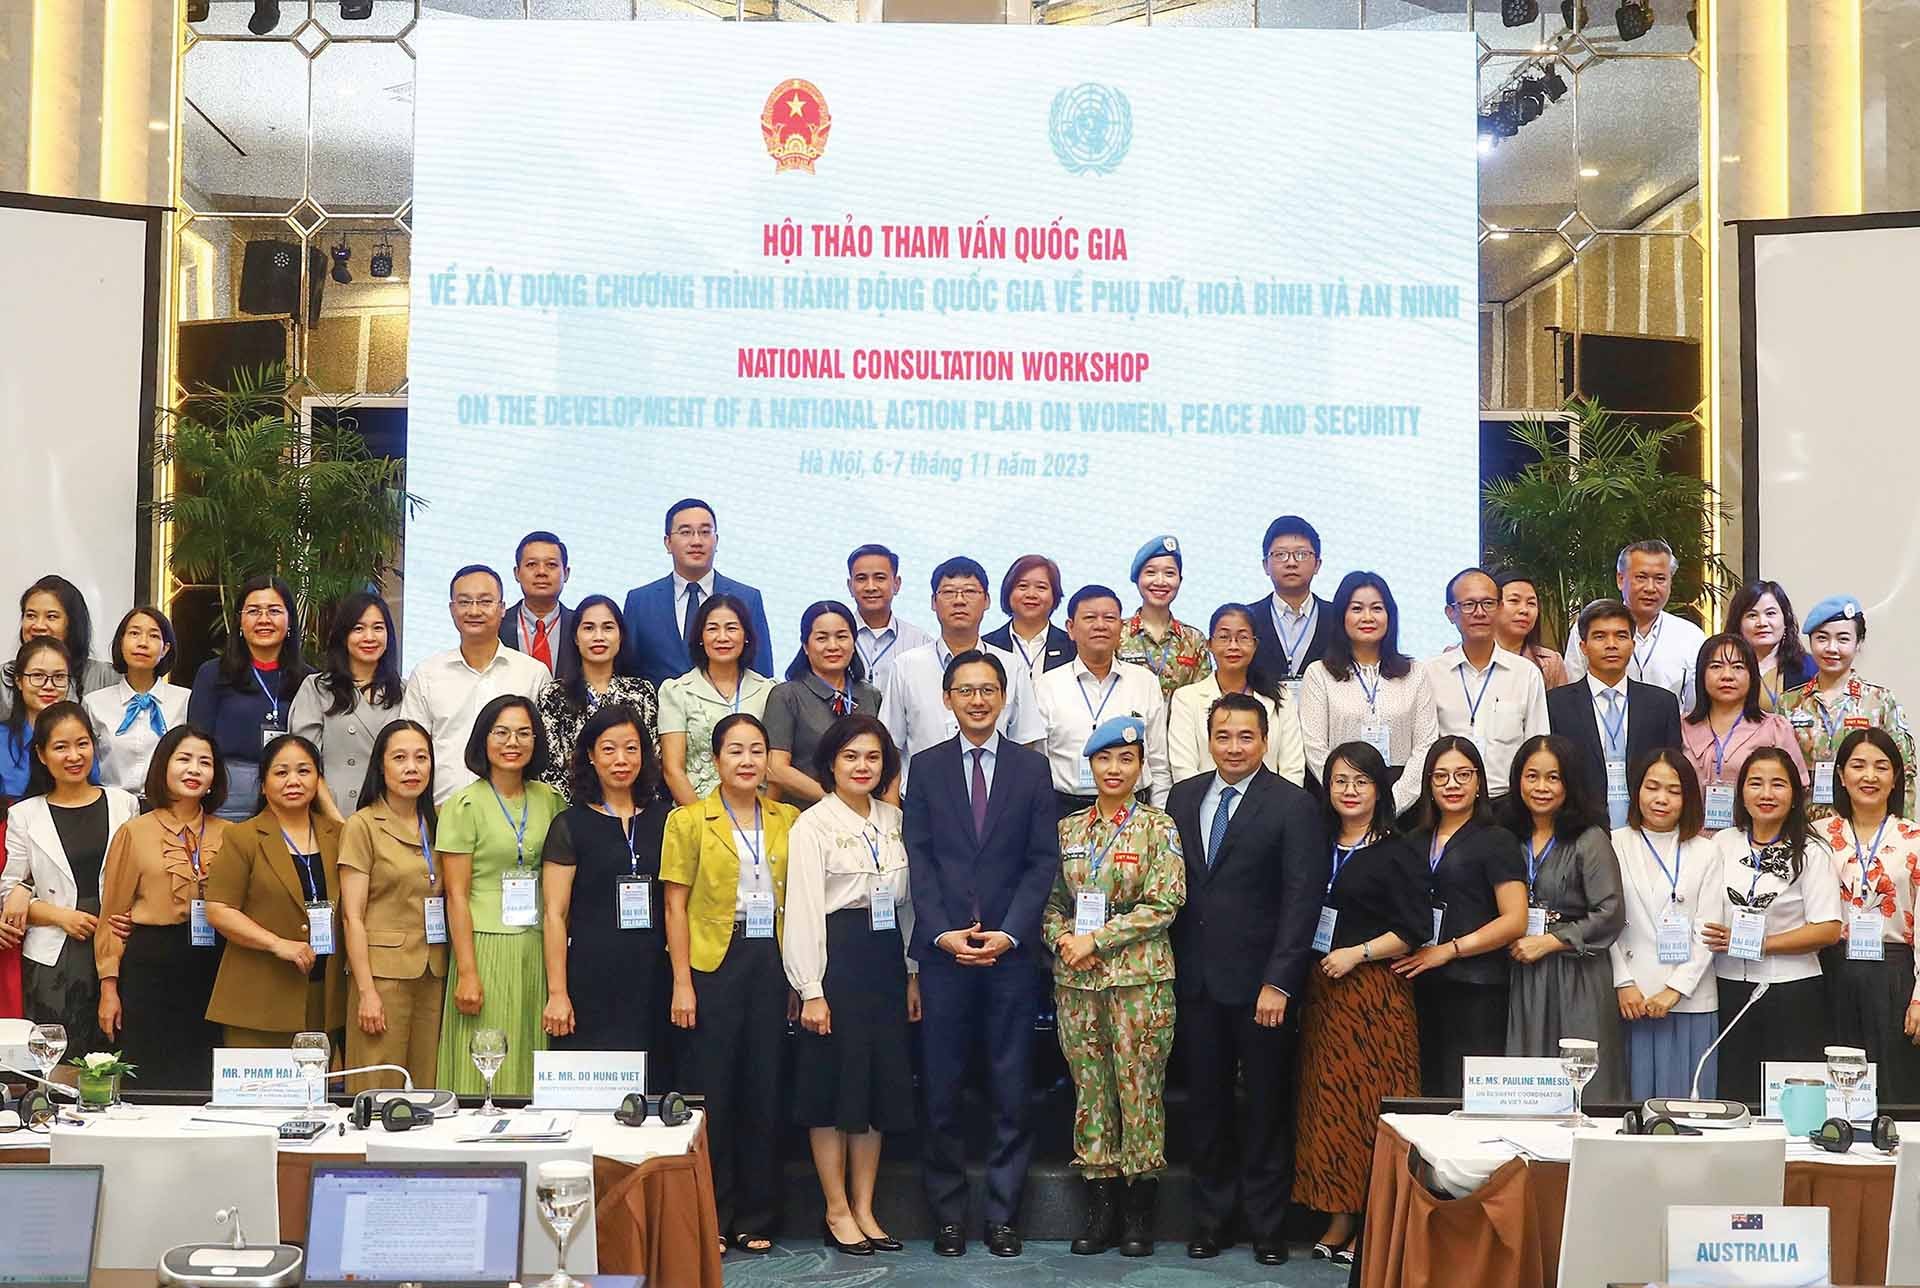 Bộ Ngoại giao và UN Women phối hợp tổ chức Hội thảo tham vấn quốc gia về xây dựng kế hoạch hành động quốc gia về phụ nữ, hòa bình và an ninh tại Hà Nội vào ngày 6/11/2023. (Nguồn: TTXVN)